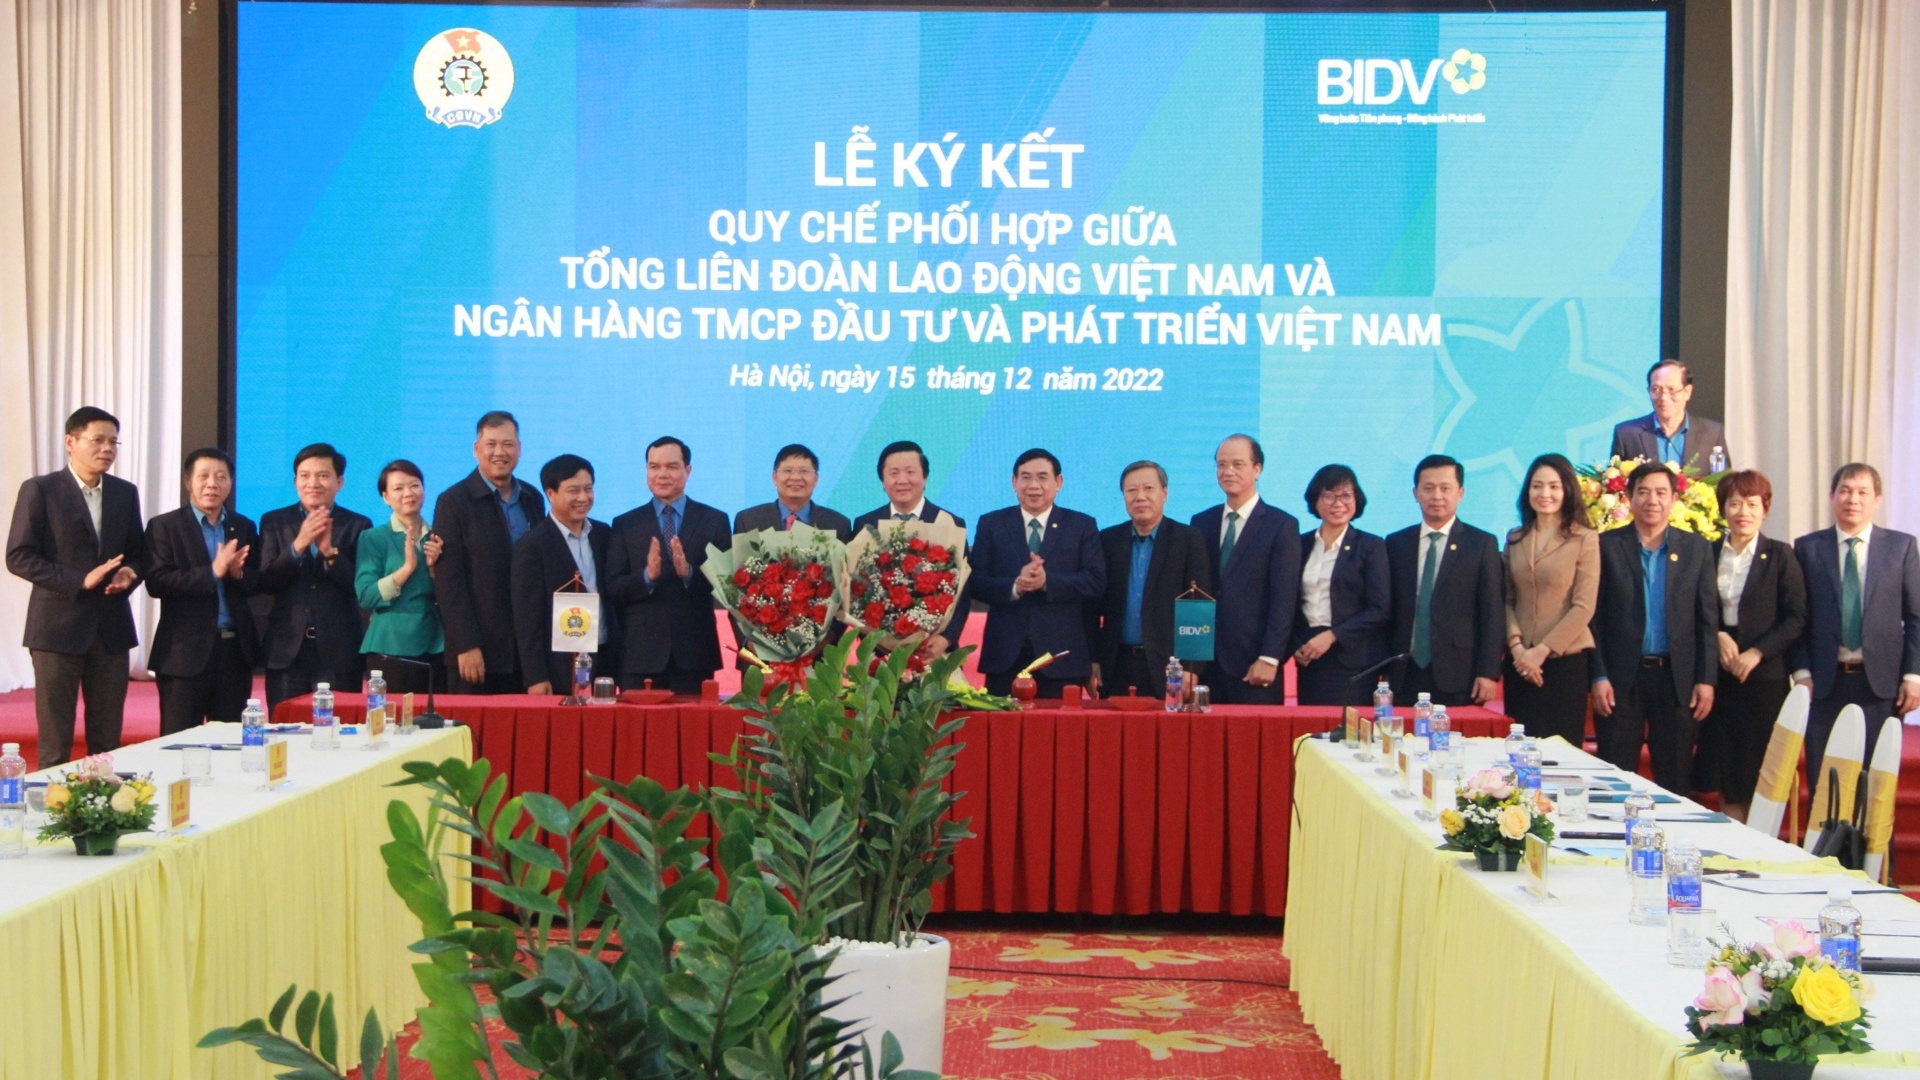 Tổng LĐLĐ Việt Nam ký kết Quy chế phối hợp với BIDV